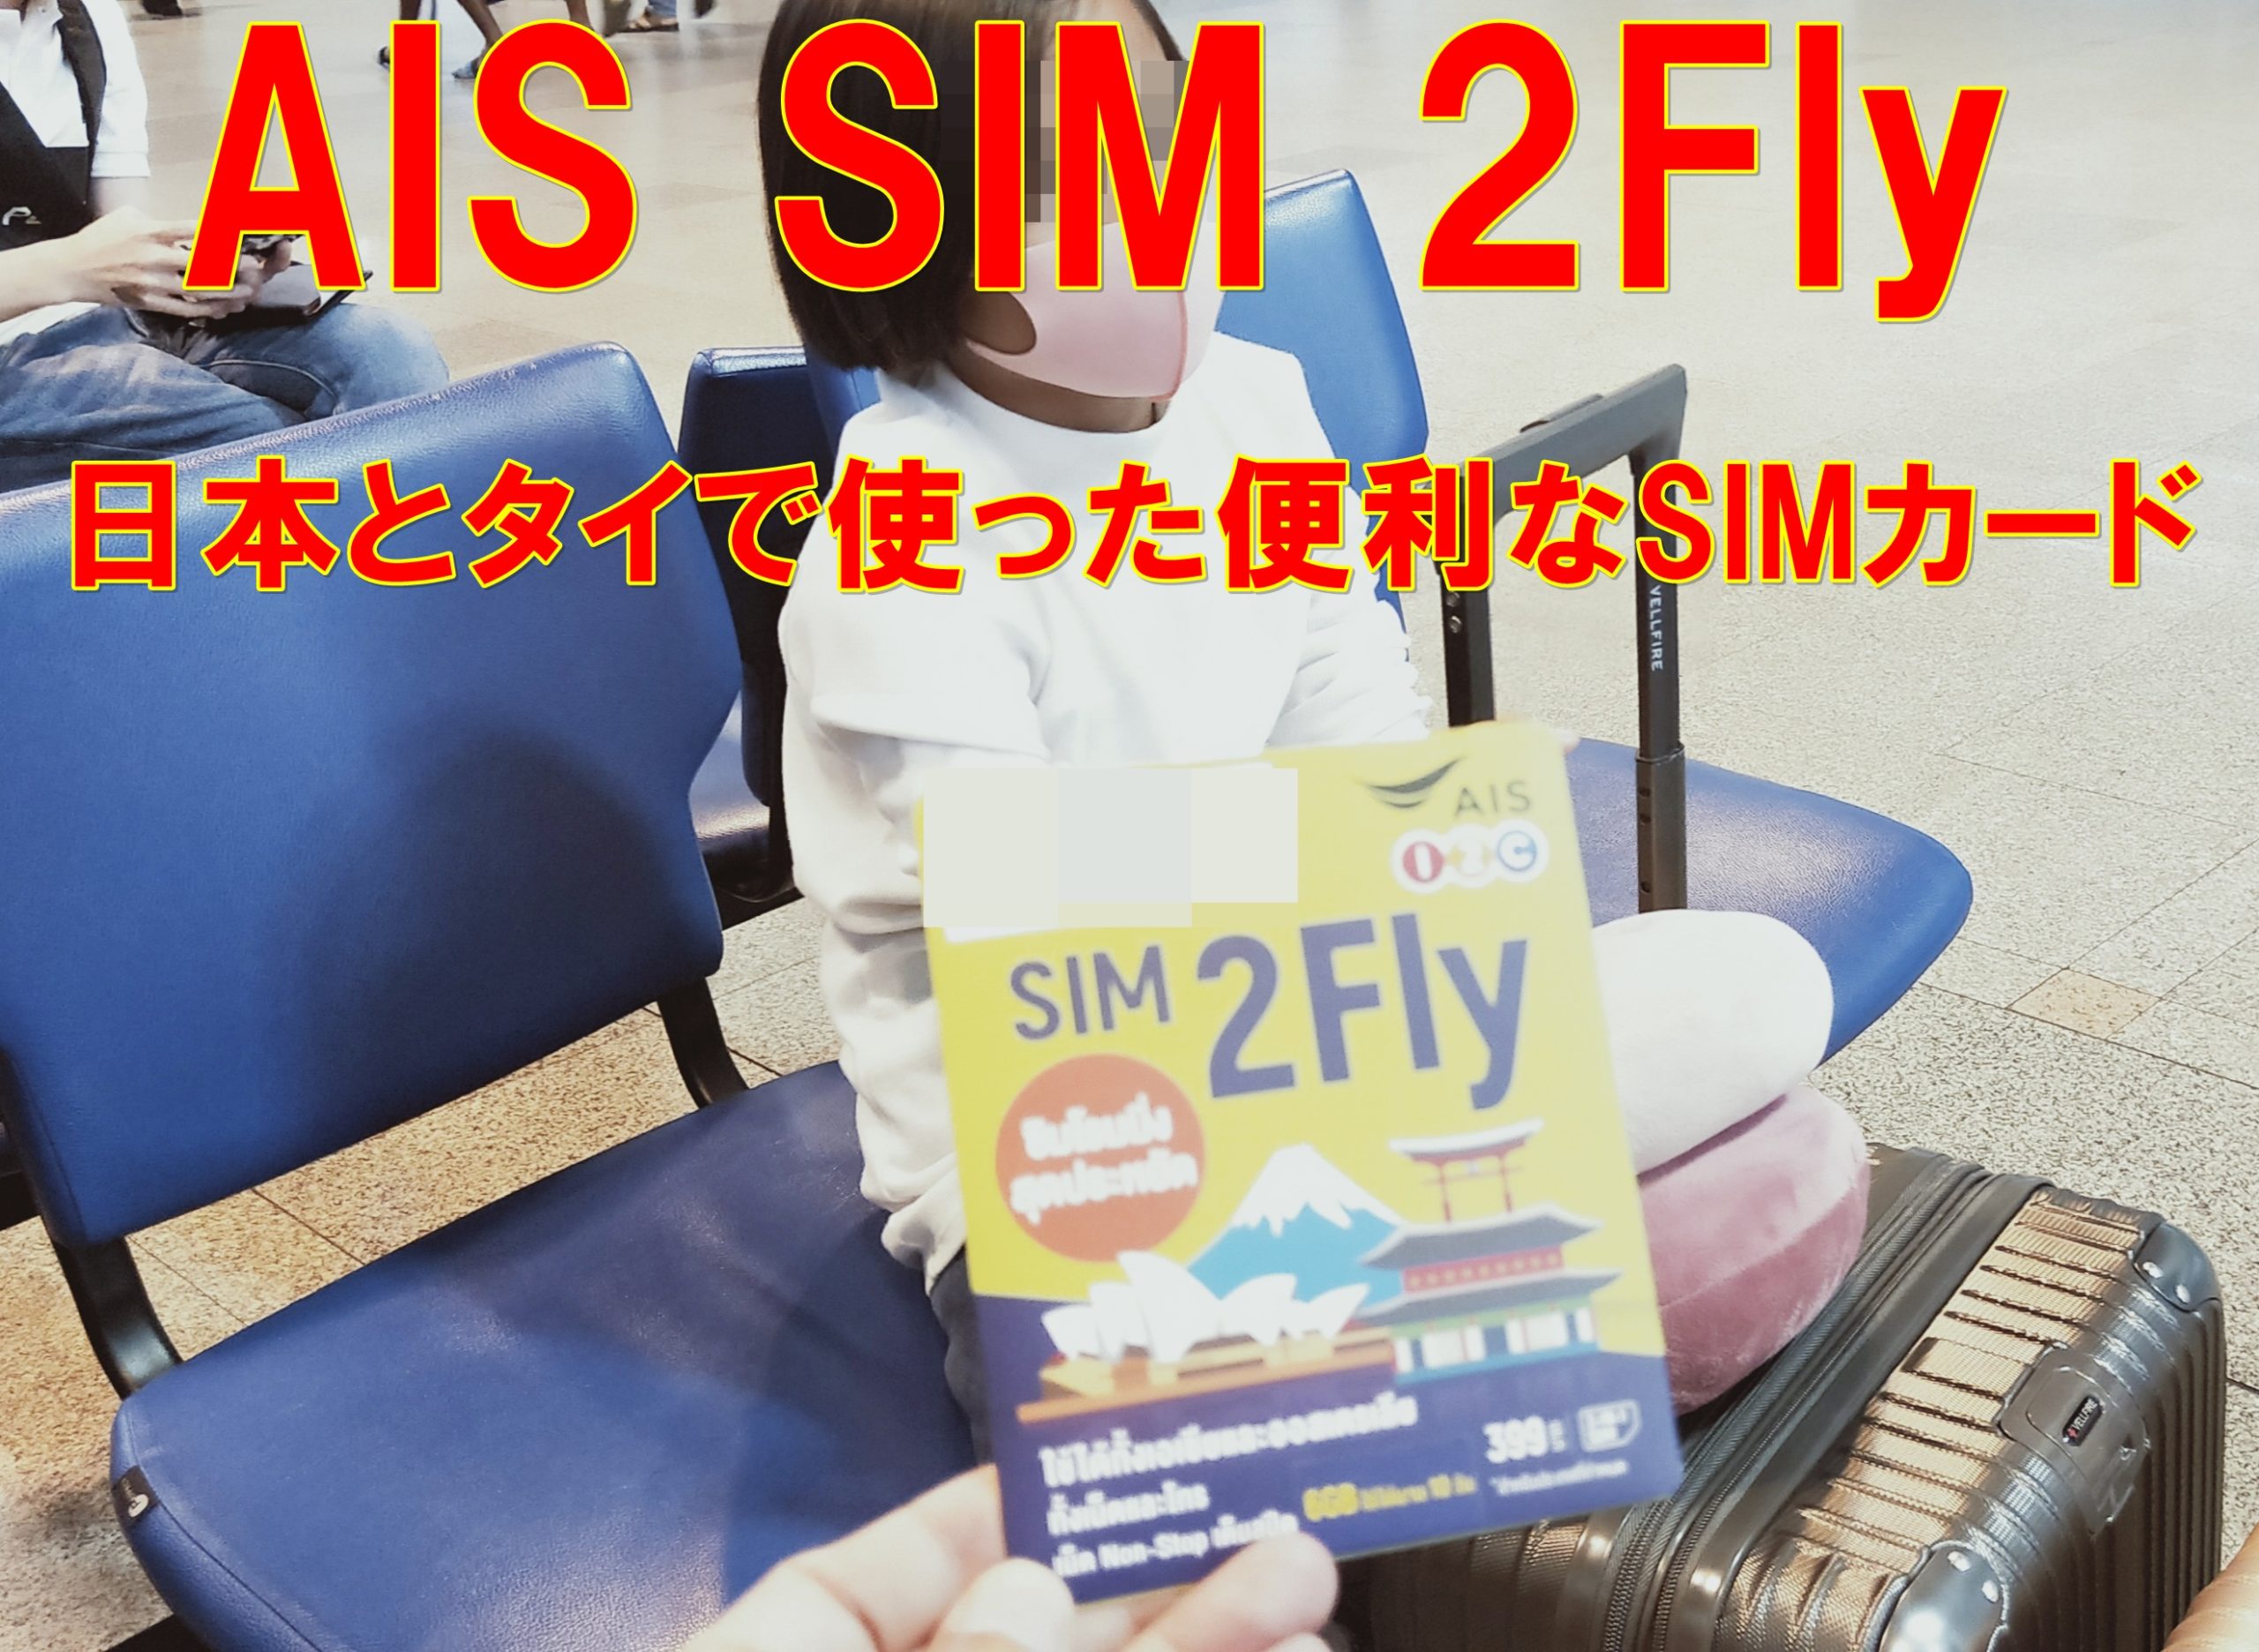 AIS SIM 2Fly